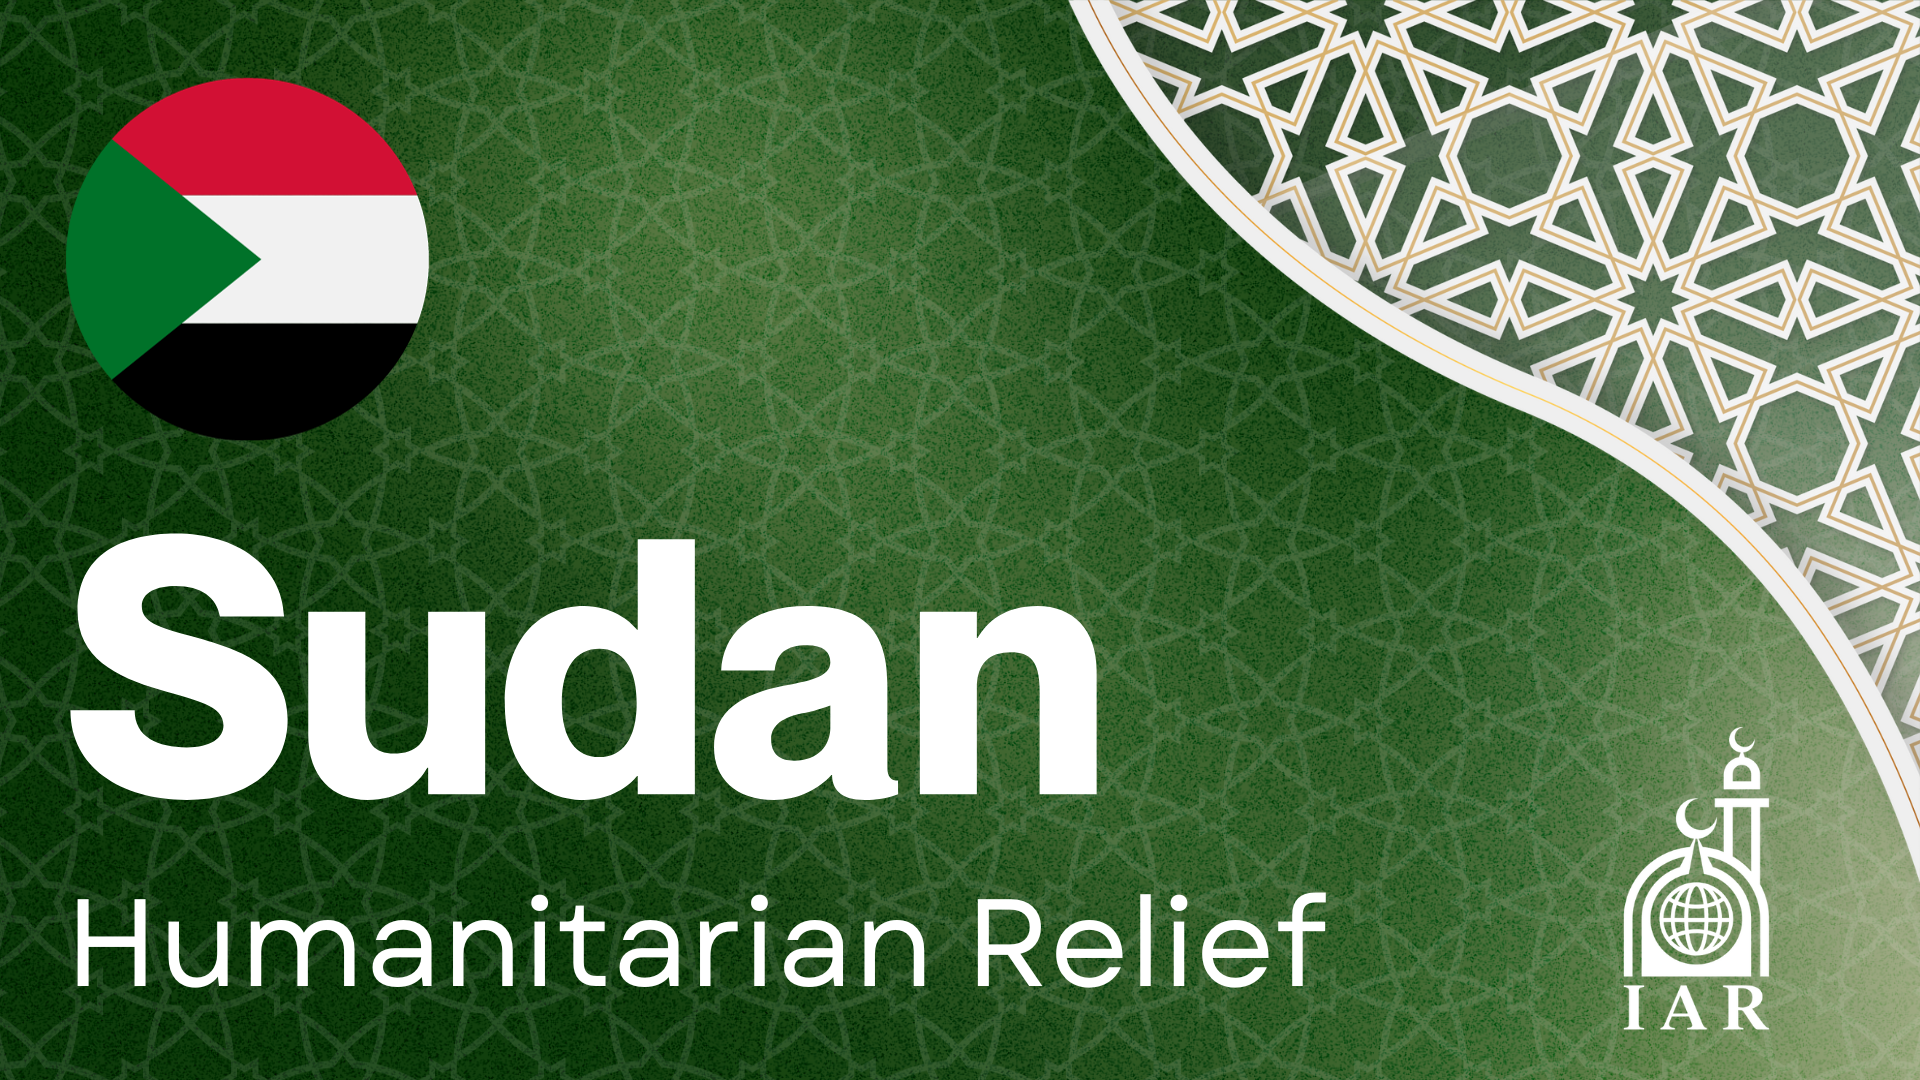 Sudan Humanitarian Relief